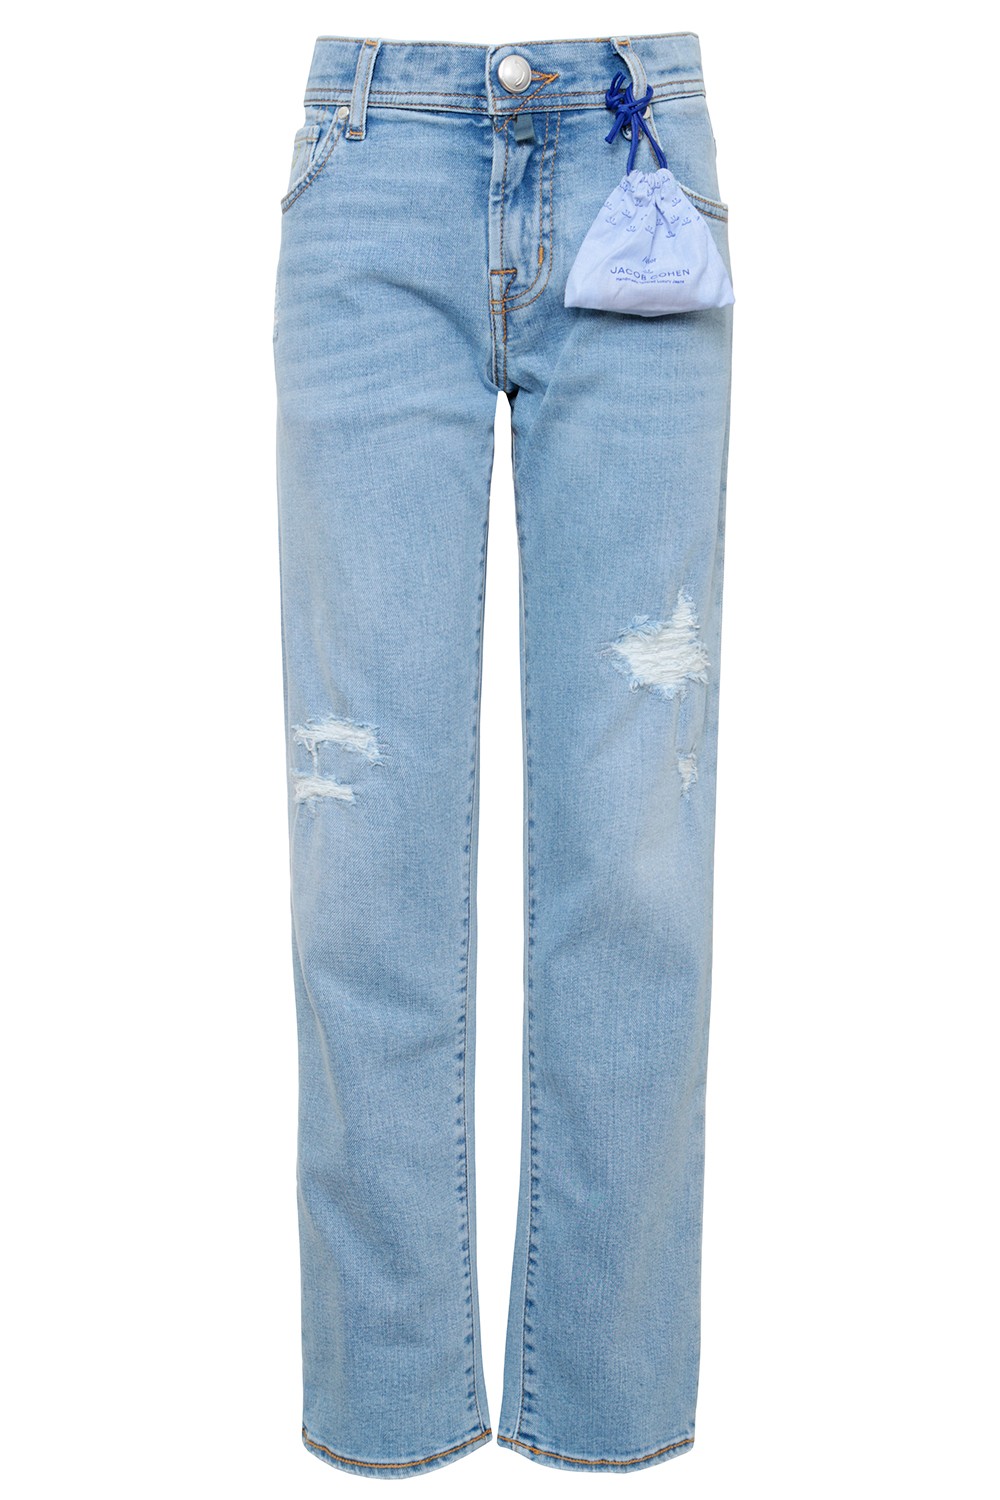 Jacob Cohen Прямые джинсы с потертостями